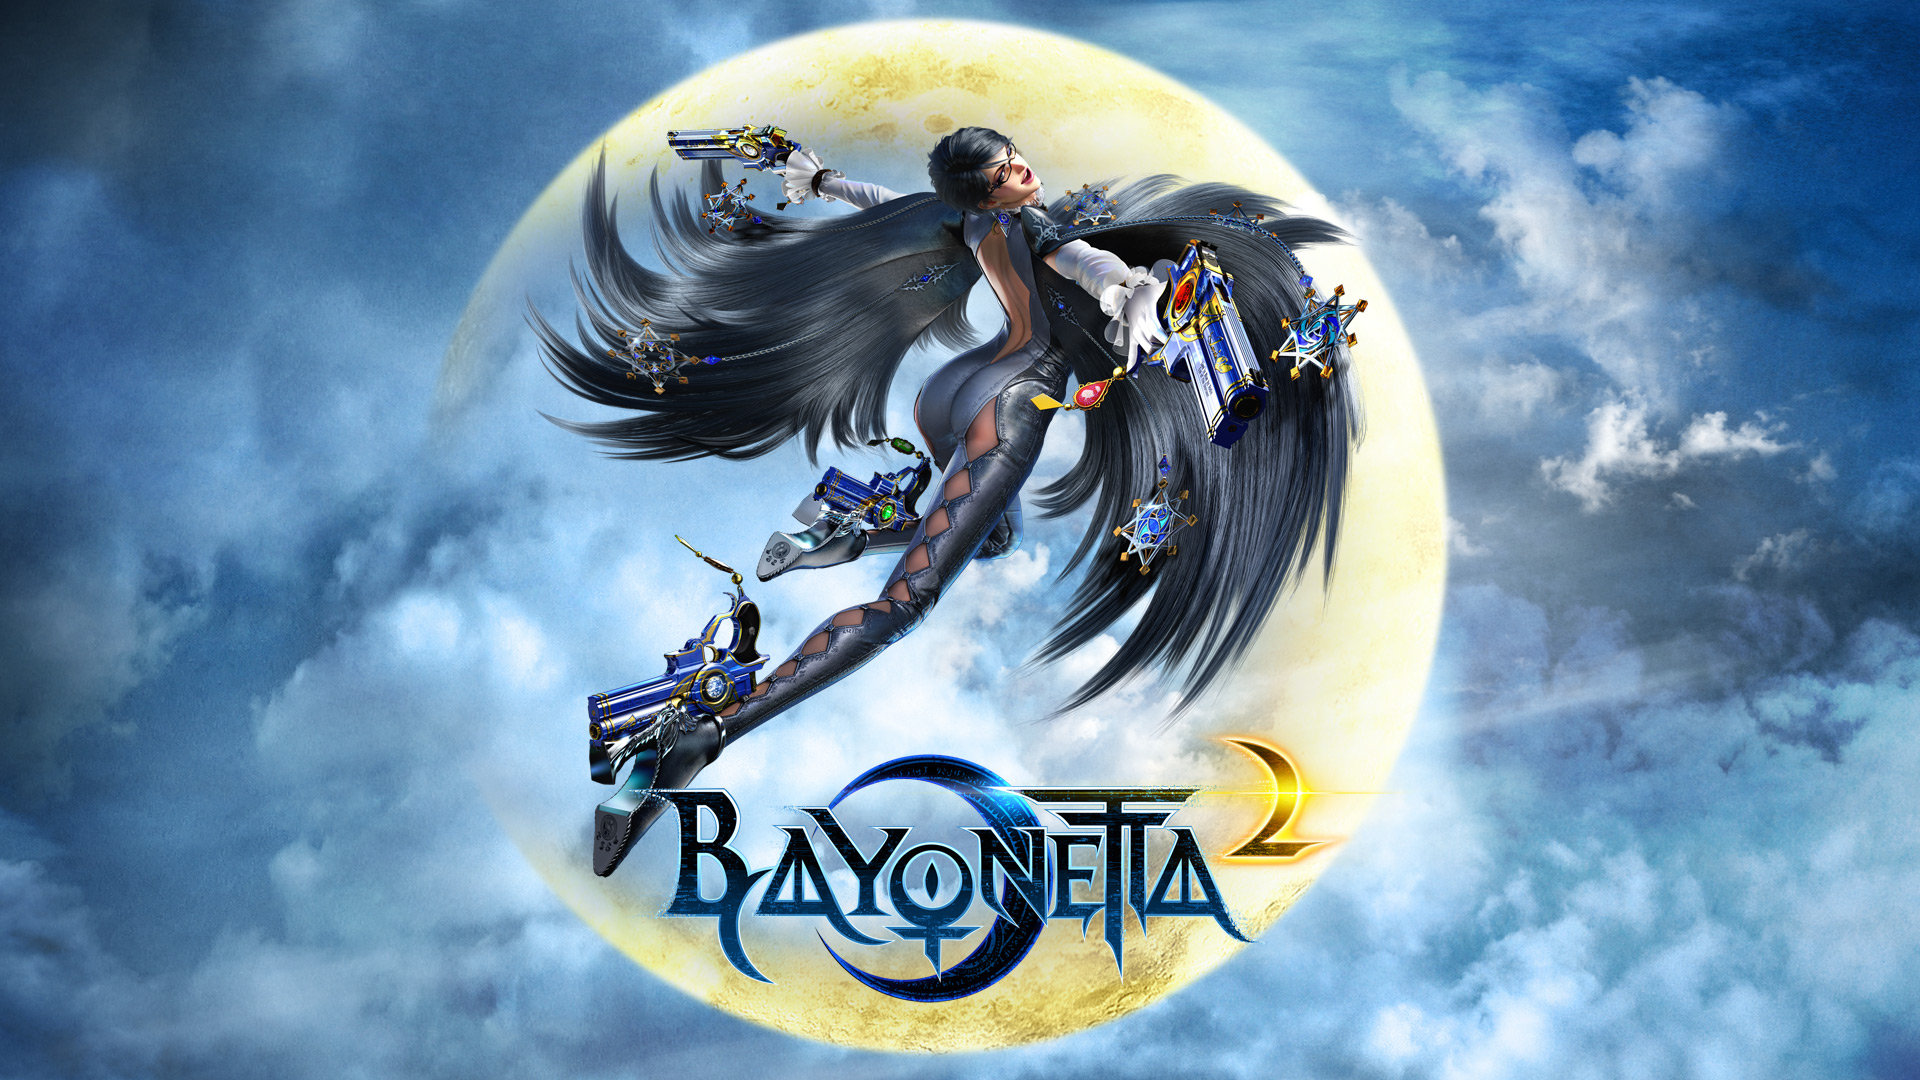 Bayonetta 2 Bayonetta Video Game Art Moon Sky Clouds Gun Half Moon 1920x1080